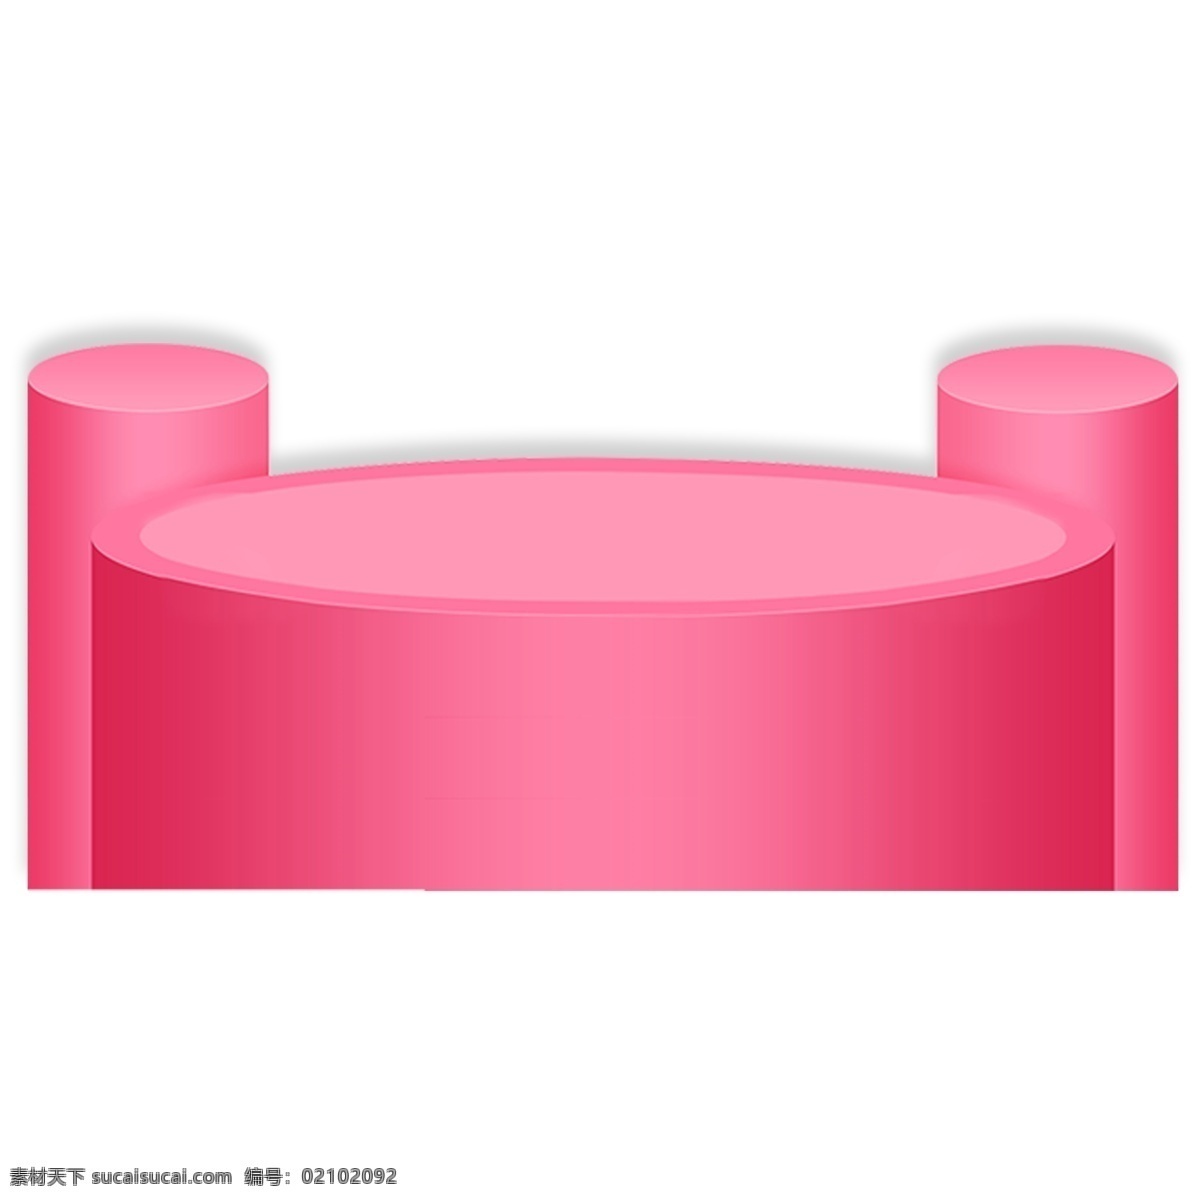 粉色 立体 圆柱 简约 商品